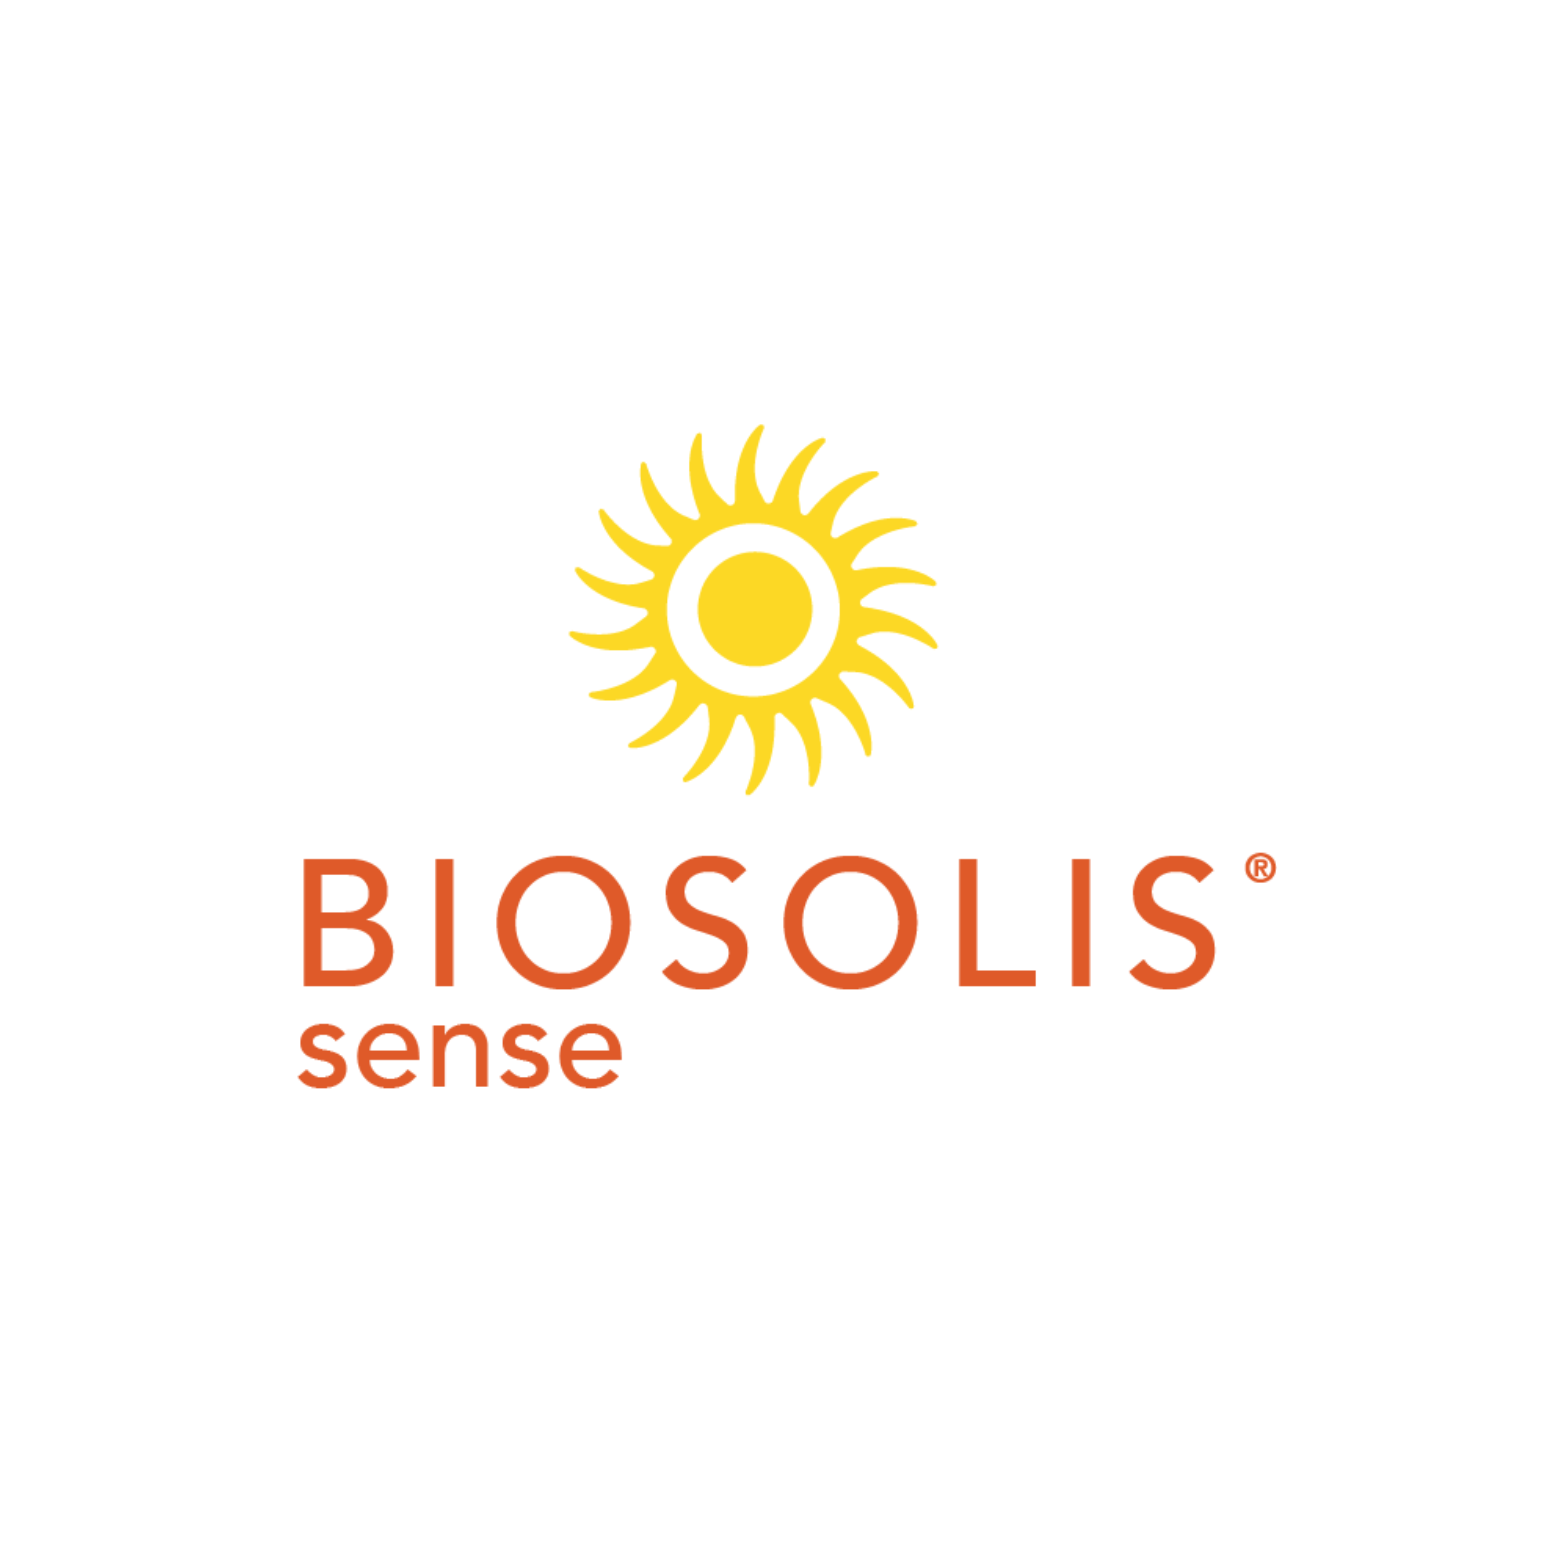 Biosolis Sense